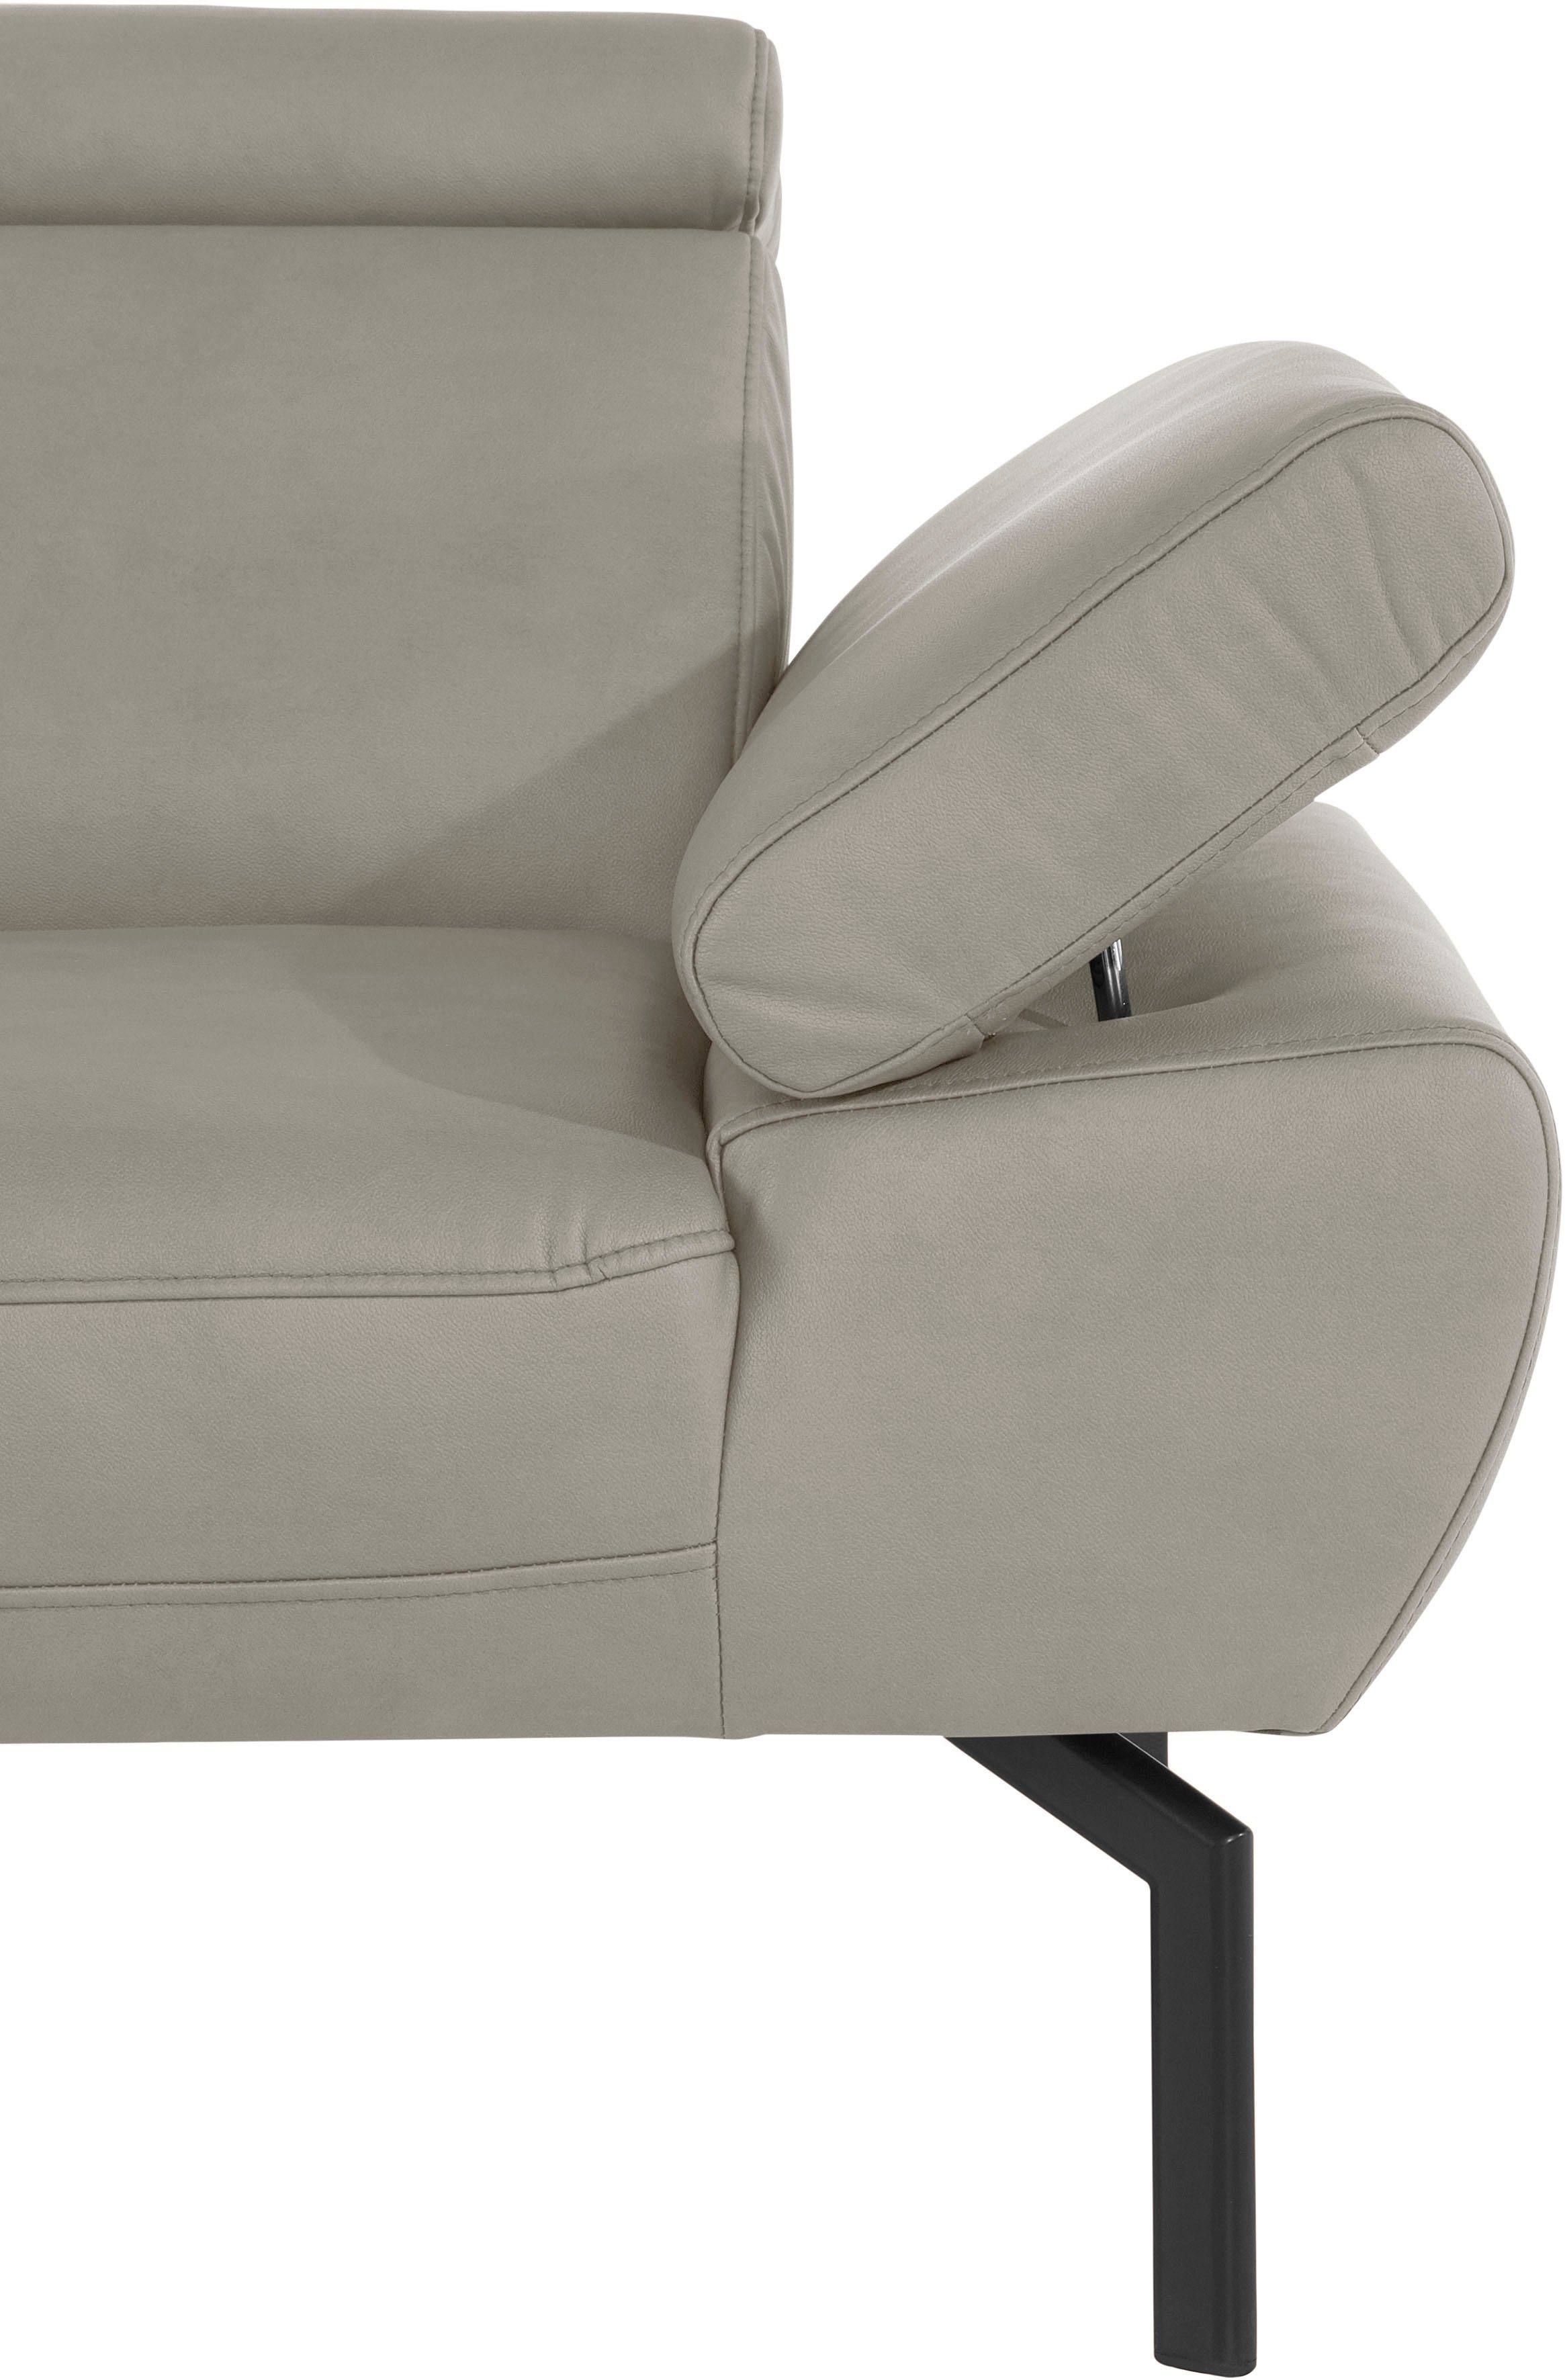 Style mit in Luxus-Microfaser Trapino Rückenverstellung, wahlweise Lederoptik Luxus, of 2-Sitzer Places